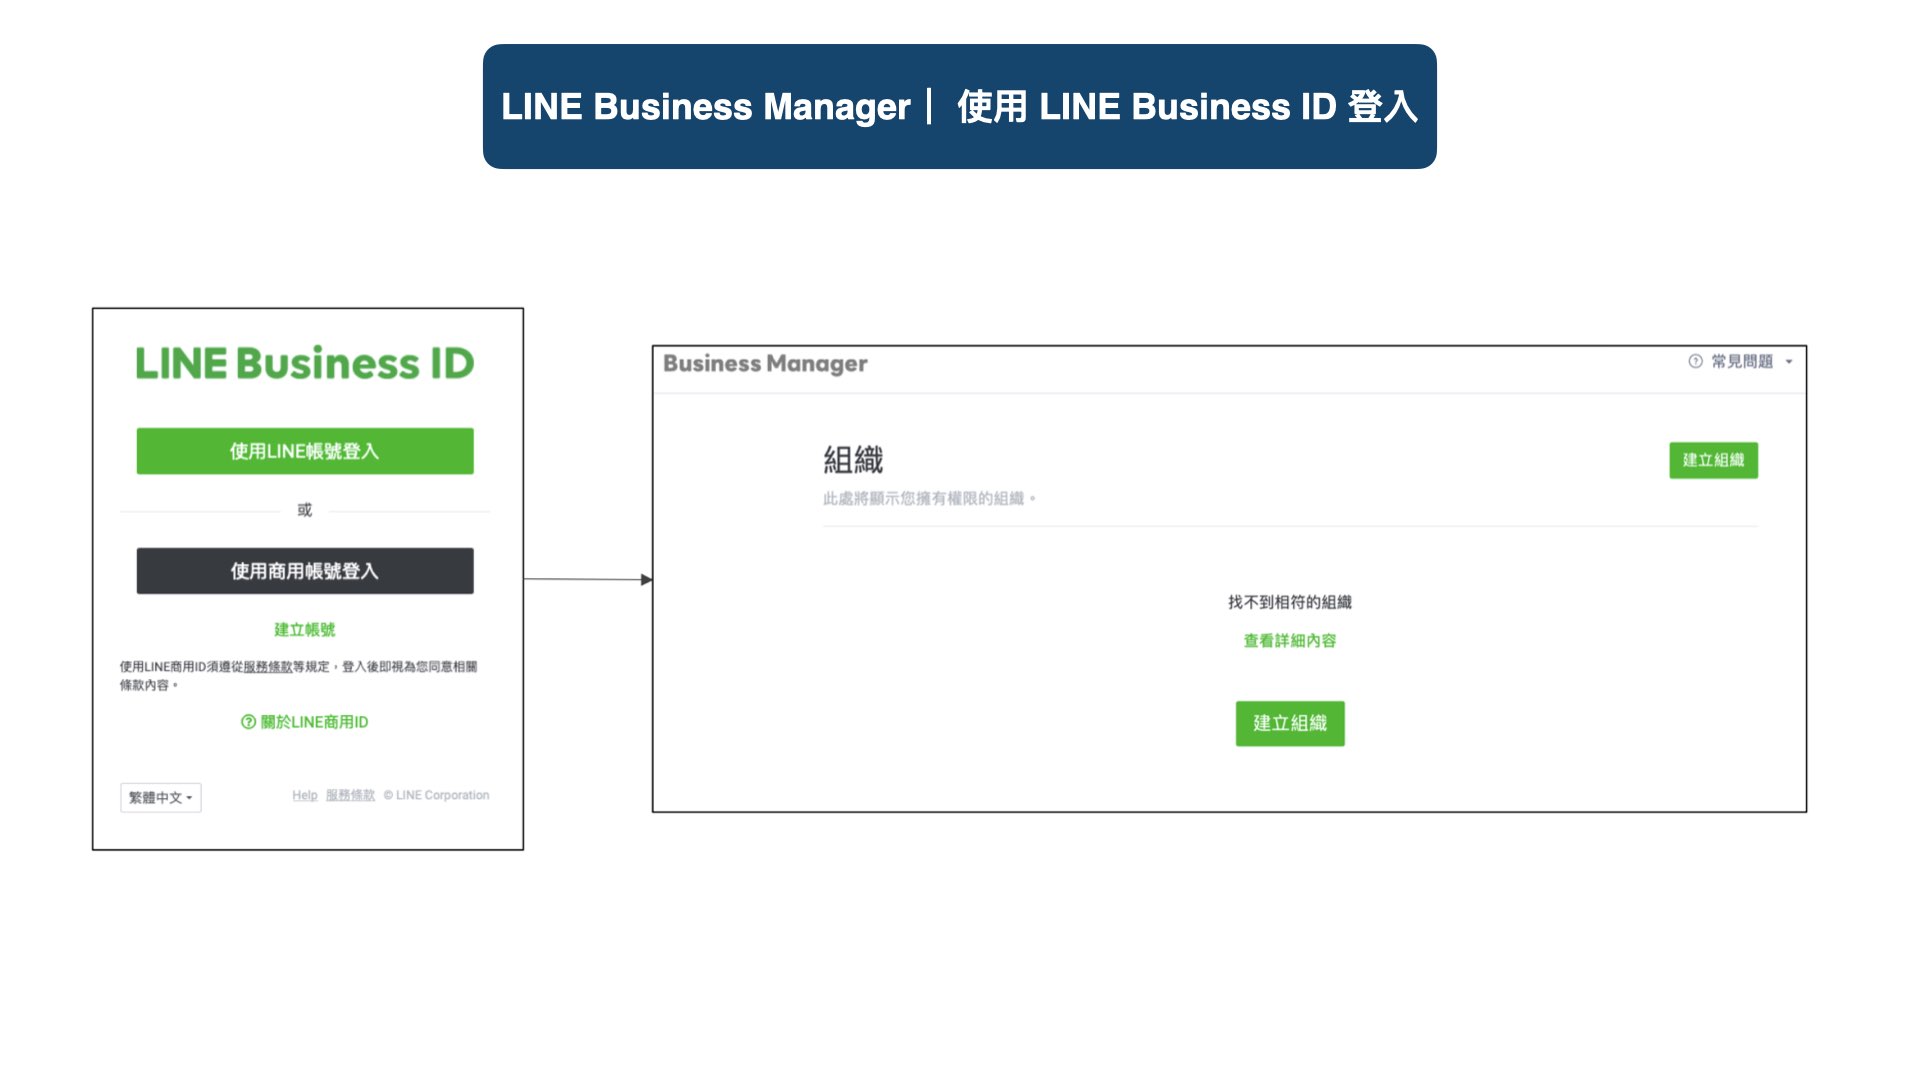 登入 LINE Business Manager 